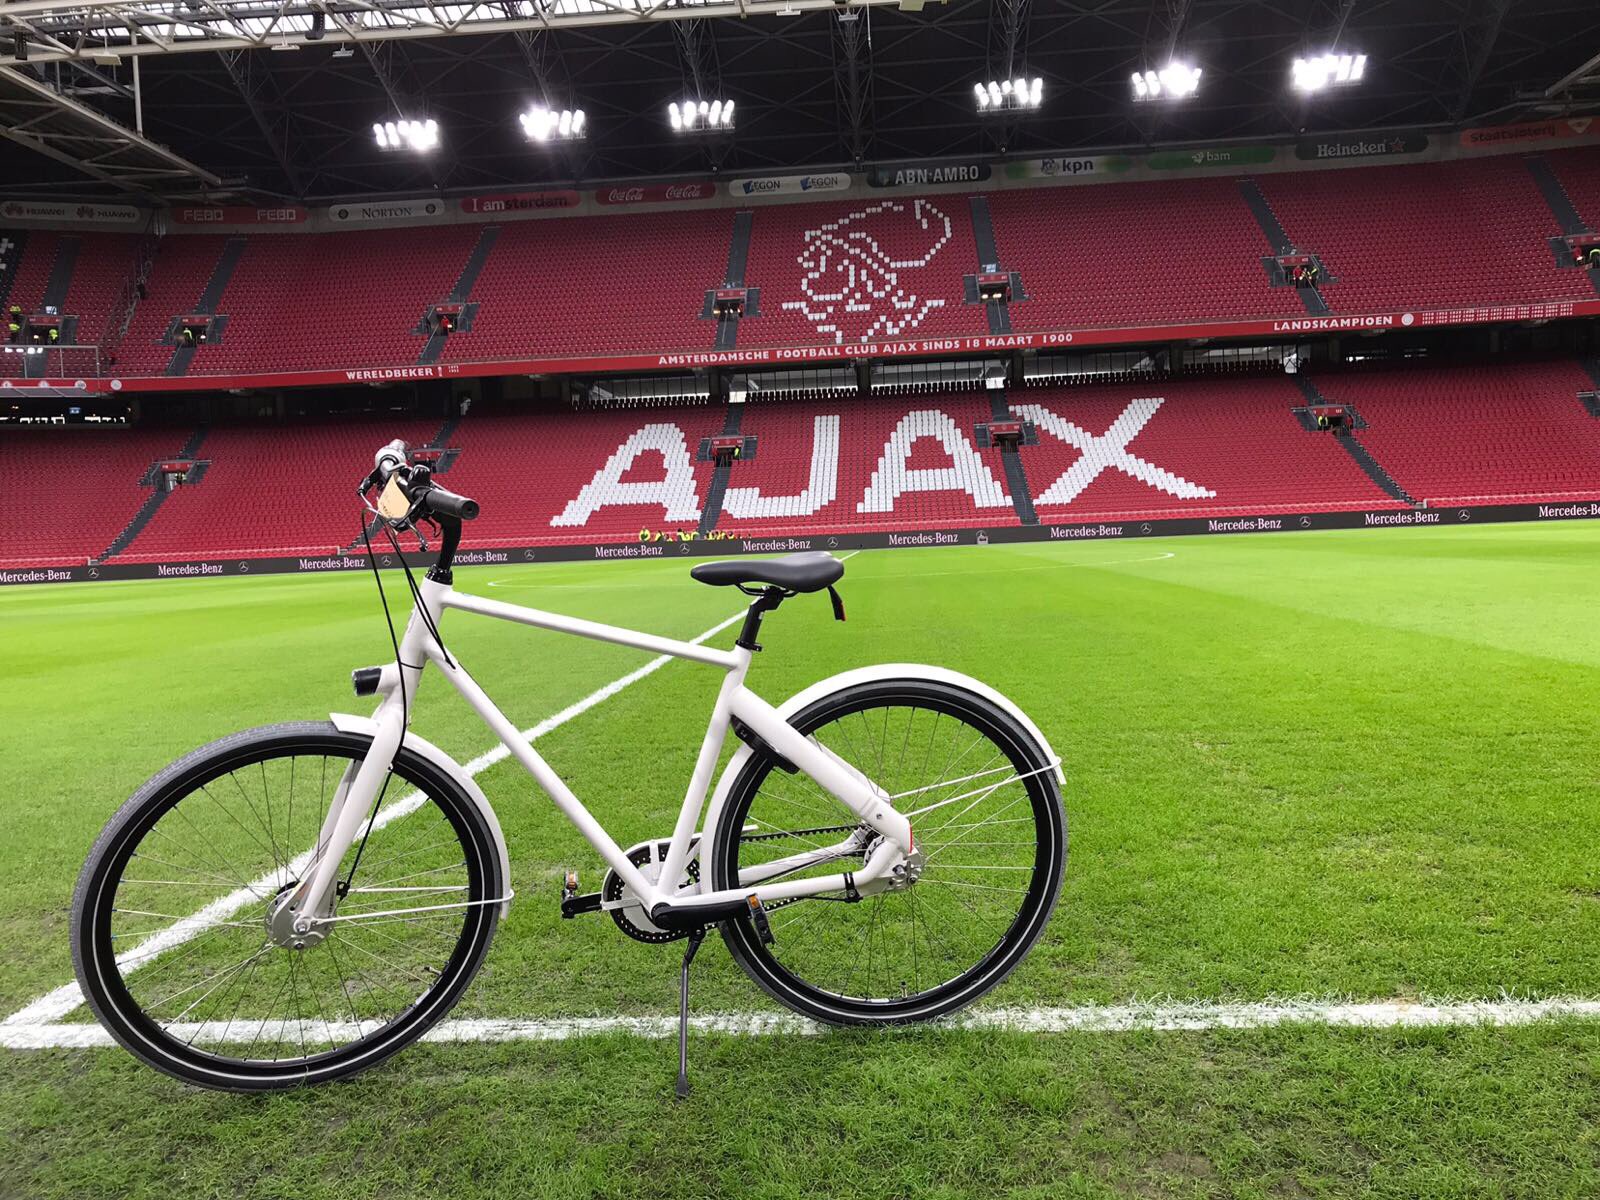 Wortel Bezwaar Achtervolging AFC Ajax on Twitter: "QUIZ ➡️ 13.45 uur op de stadionschermen! Doe mee en  maak kans op deze fiets! #CST #Cortina #ajautr https://t.co/n4cVEjqC8b" /  Twitter